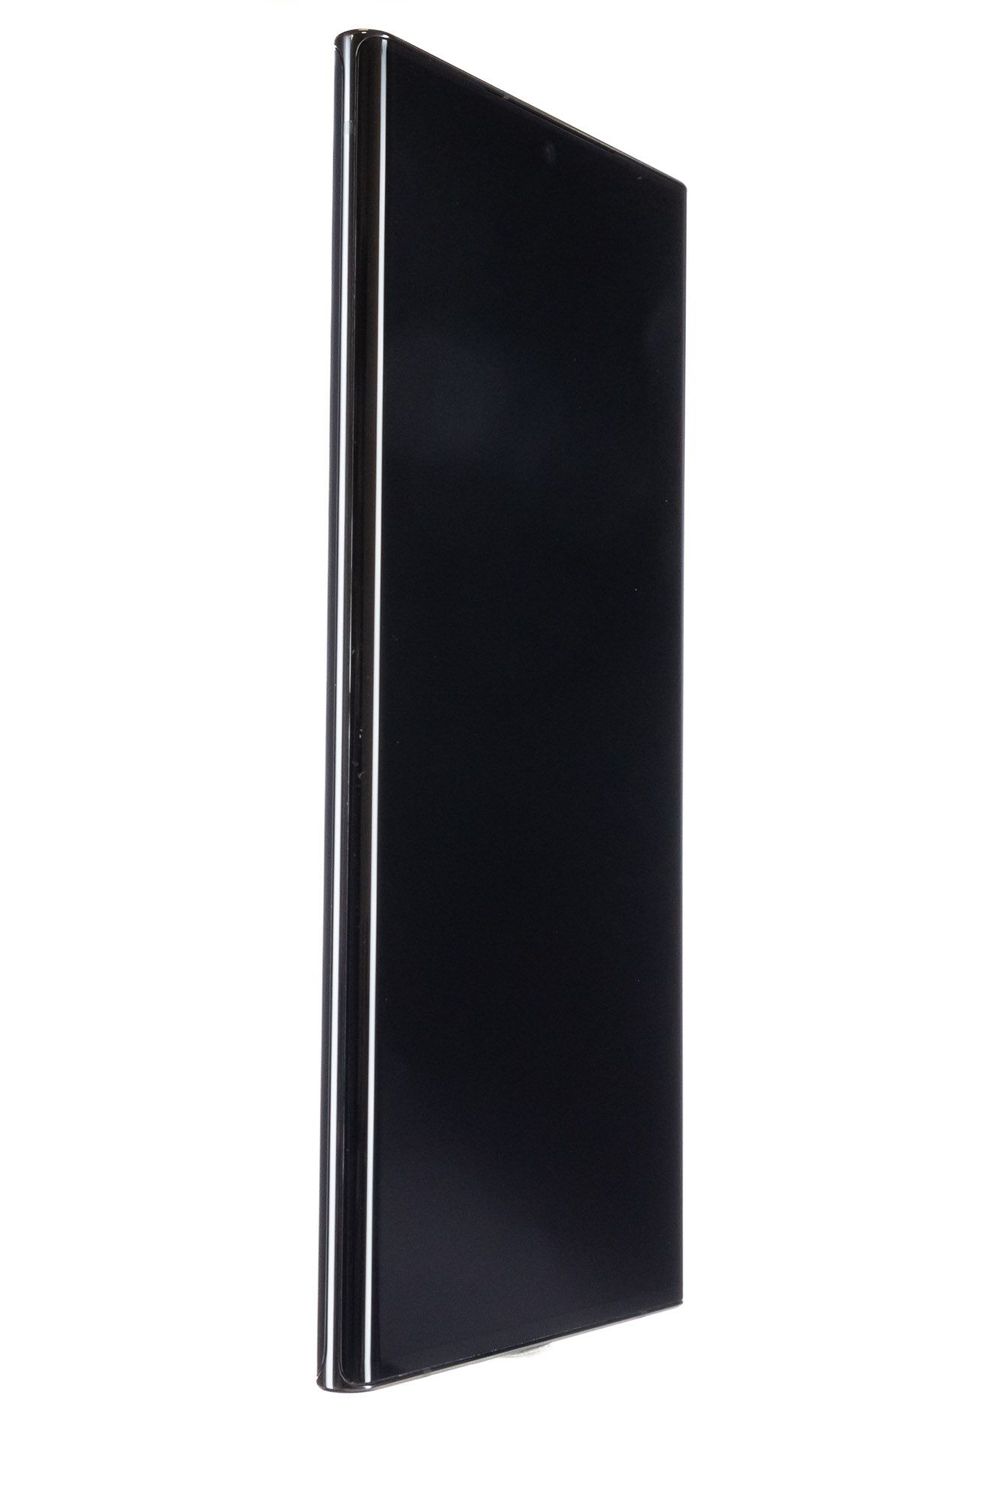 Κινητό τηλέφωνο Samsung Galaxy Note 20 Ultra Dual Sim, Black, 512 GB, Bun